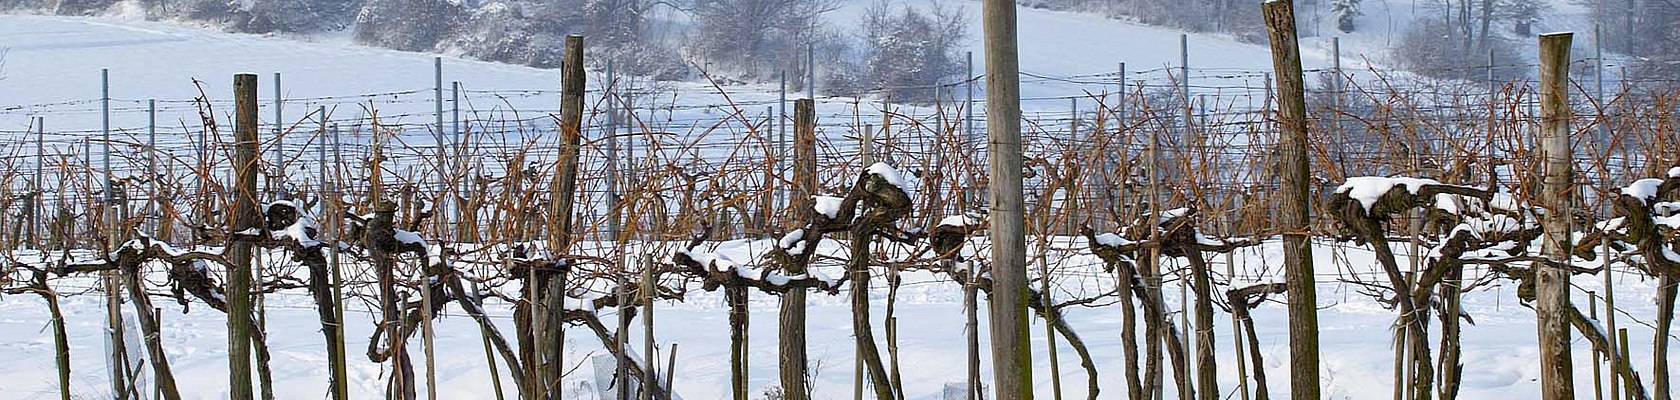 Weinstöcke im Winter, © www.lahmer.at